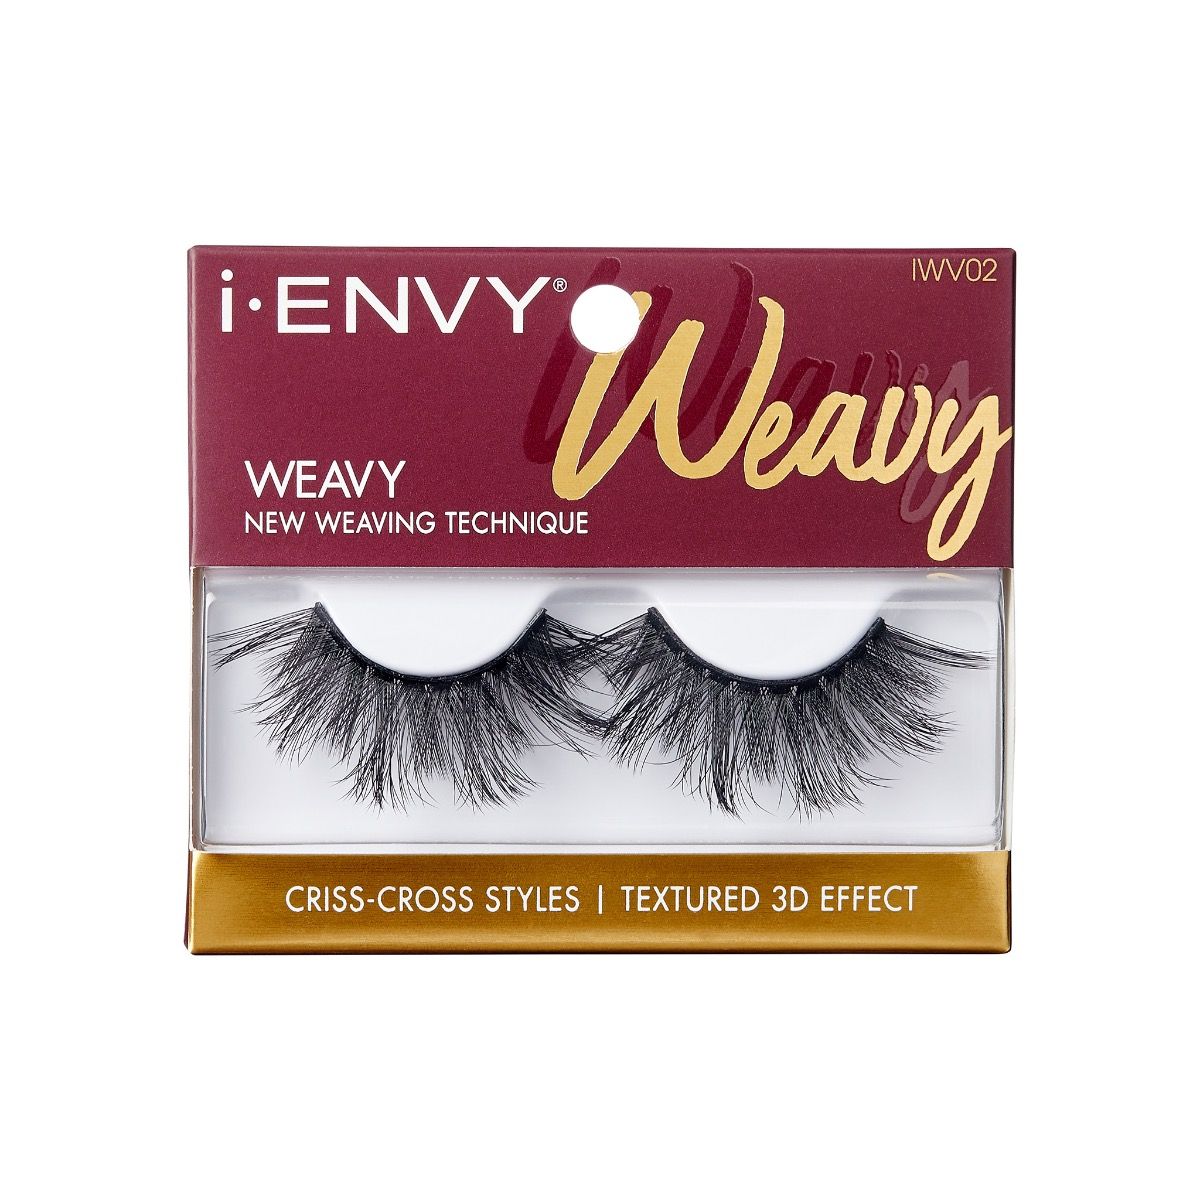 i.ENVY Weavy Lashes (IWV02)